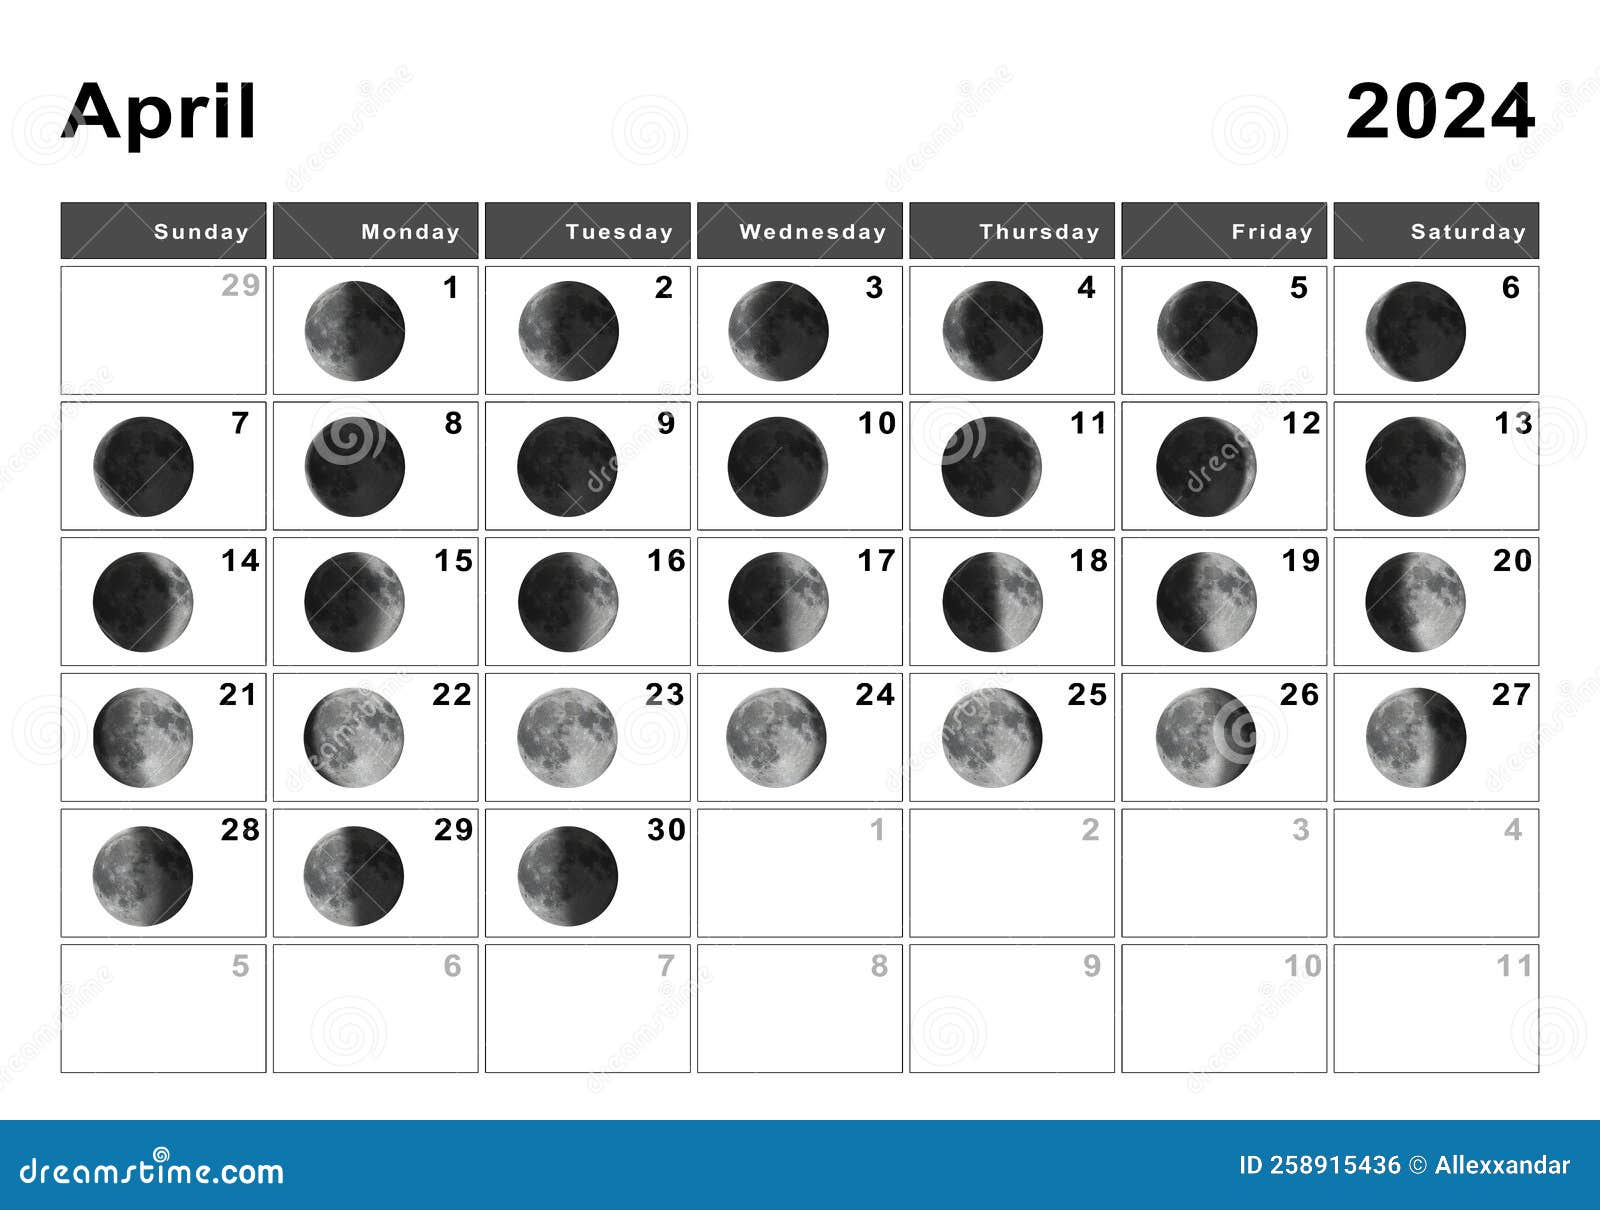 April 2024 Lunar Calendar, Moon Cycles Stock Illustration pertaining to Moon Calendar April 2024